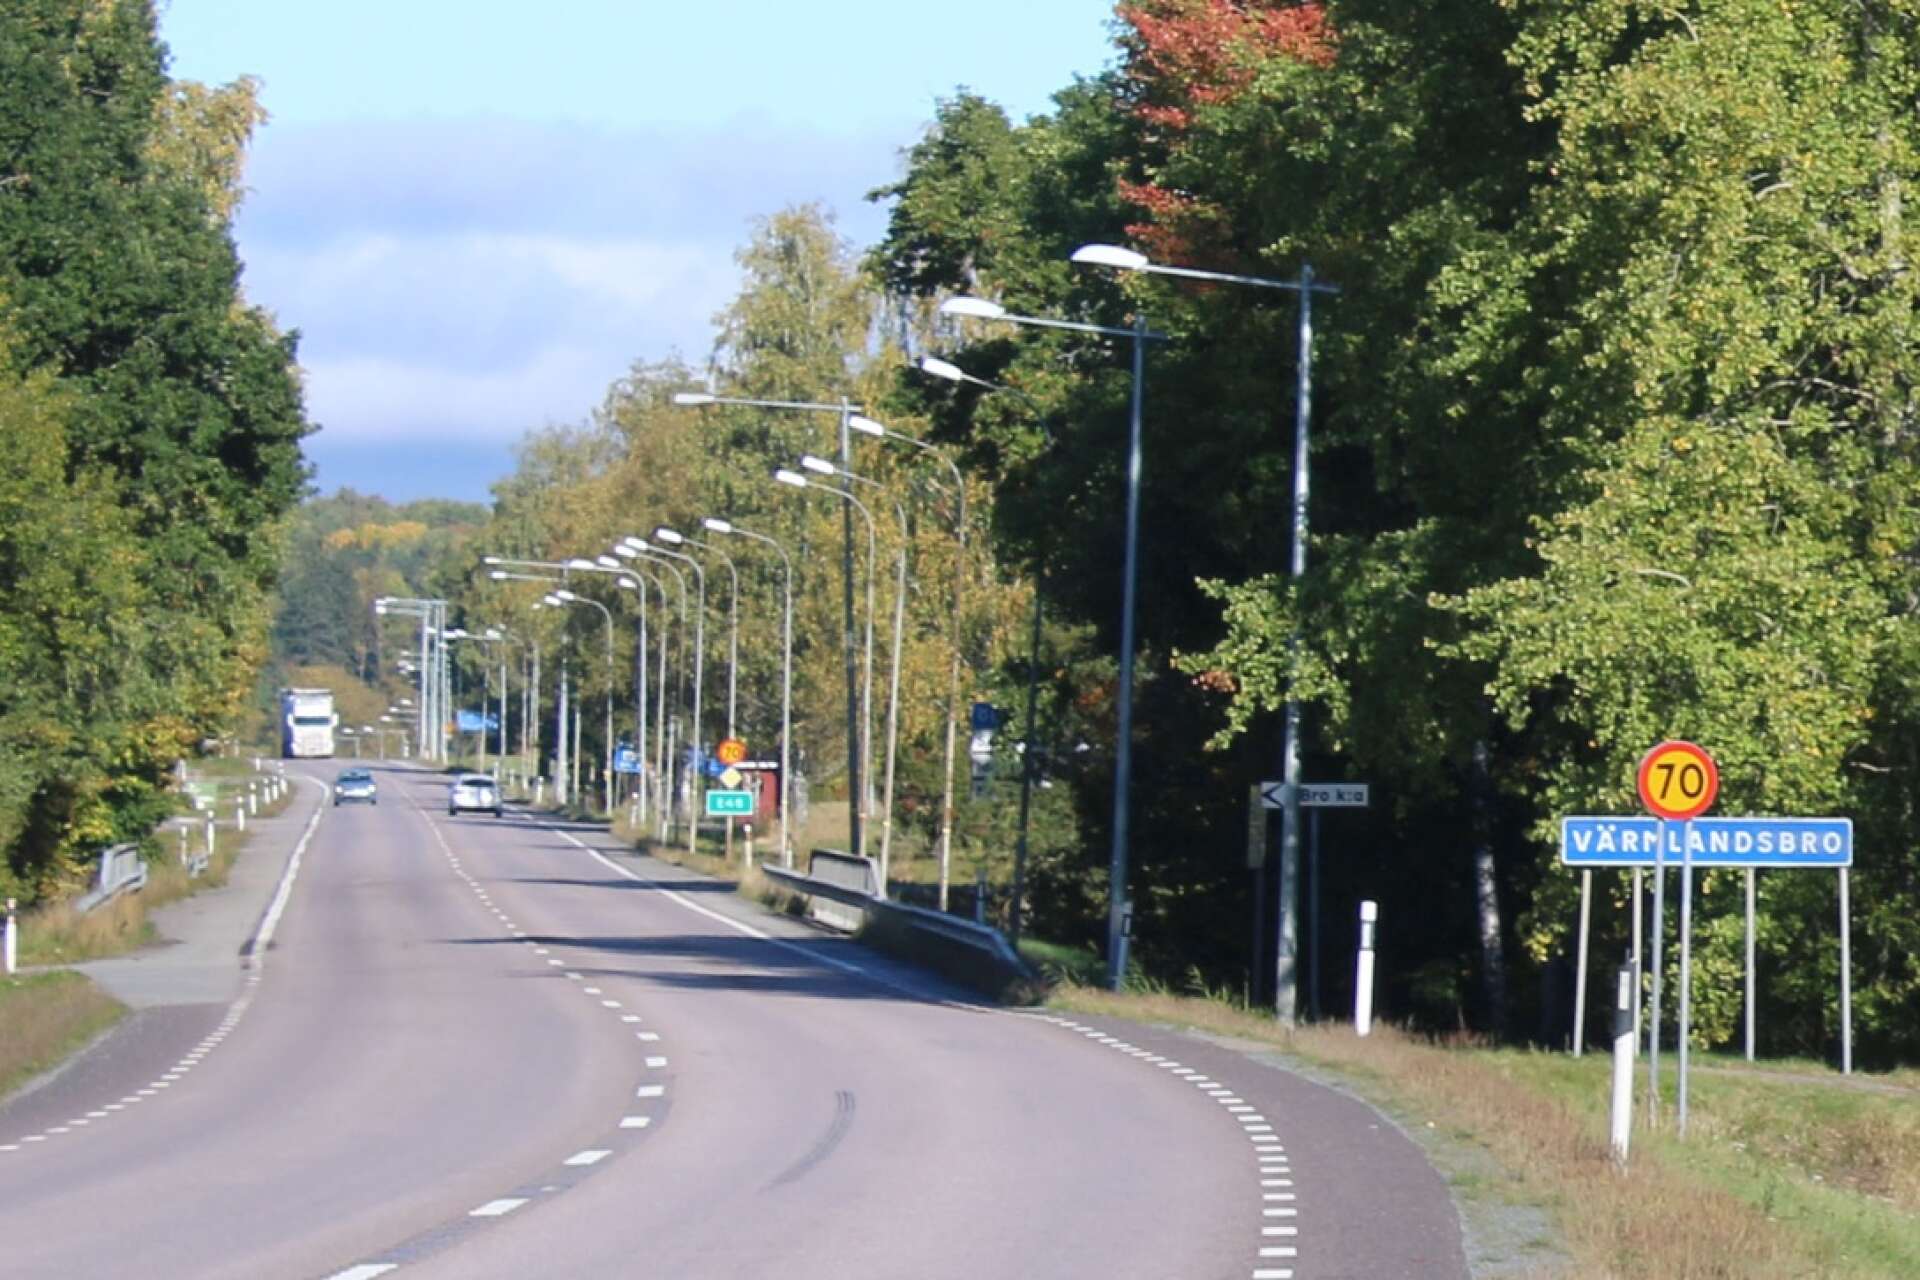 E45 kommer även efter ombyggnaden gå genom Värmlandsbro, enligt Trafikverkets plan som nu lagts fram för samråd.